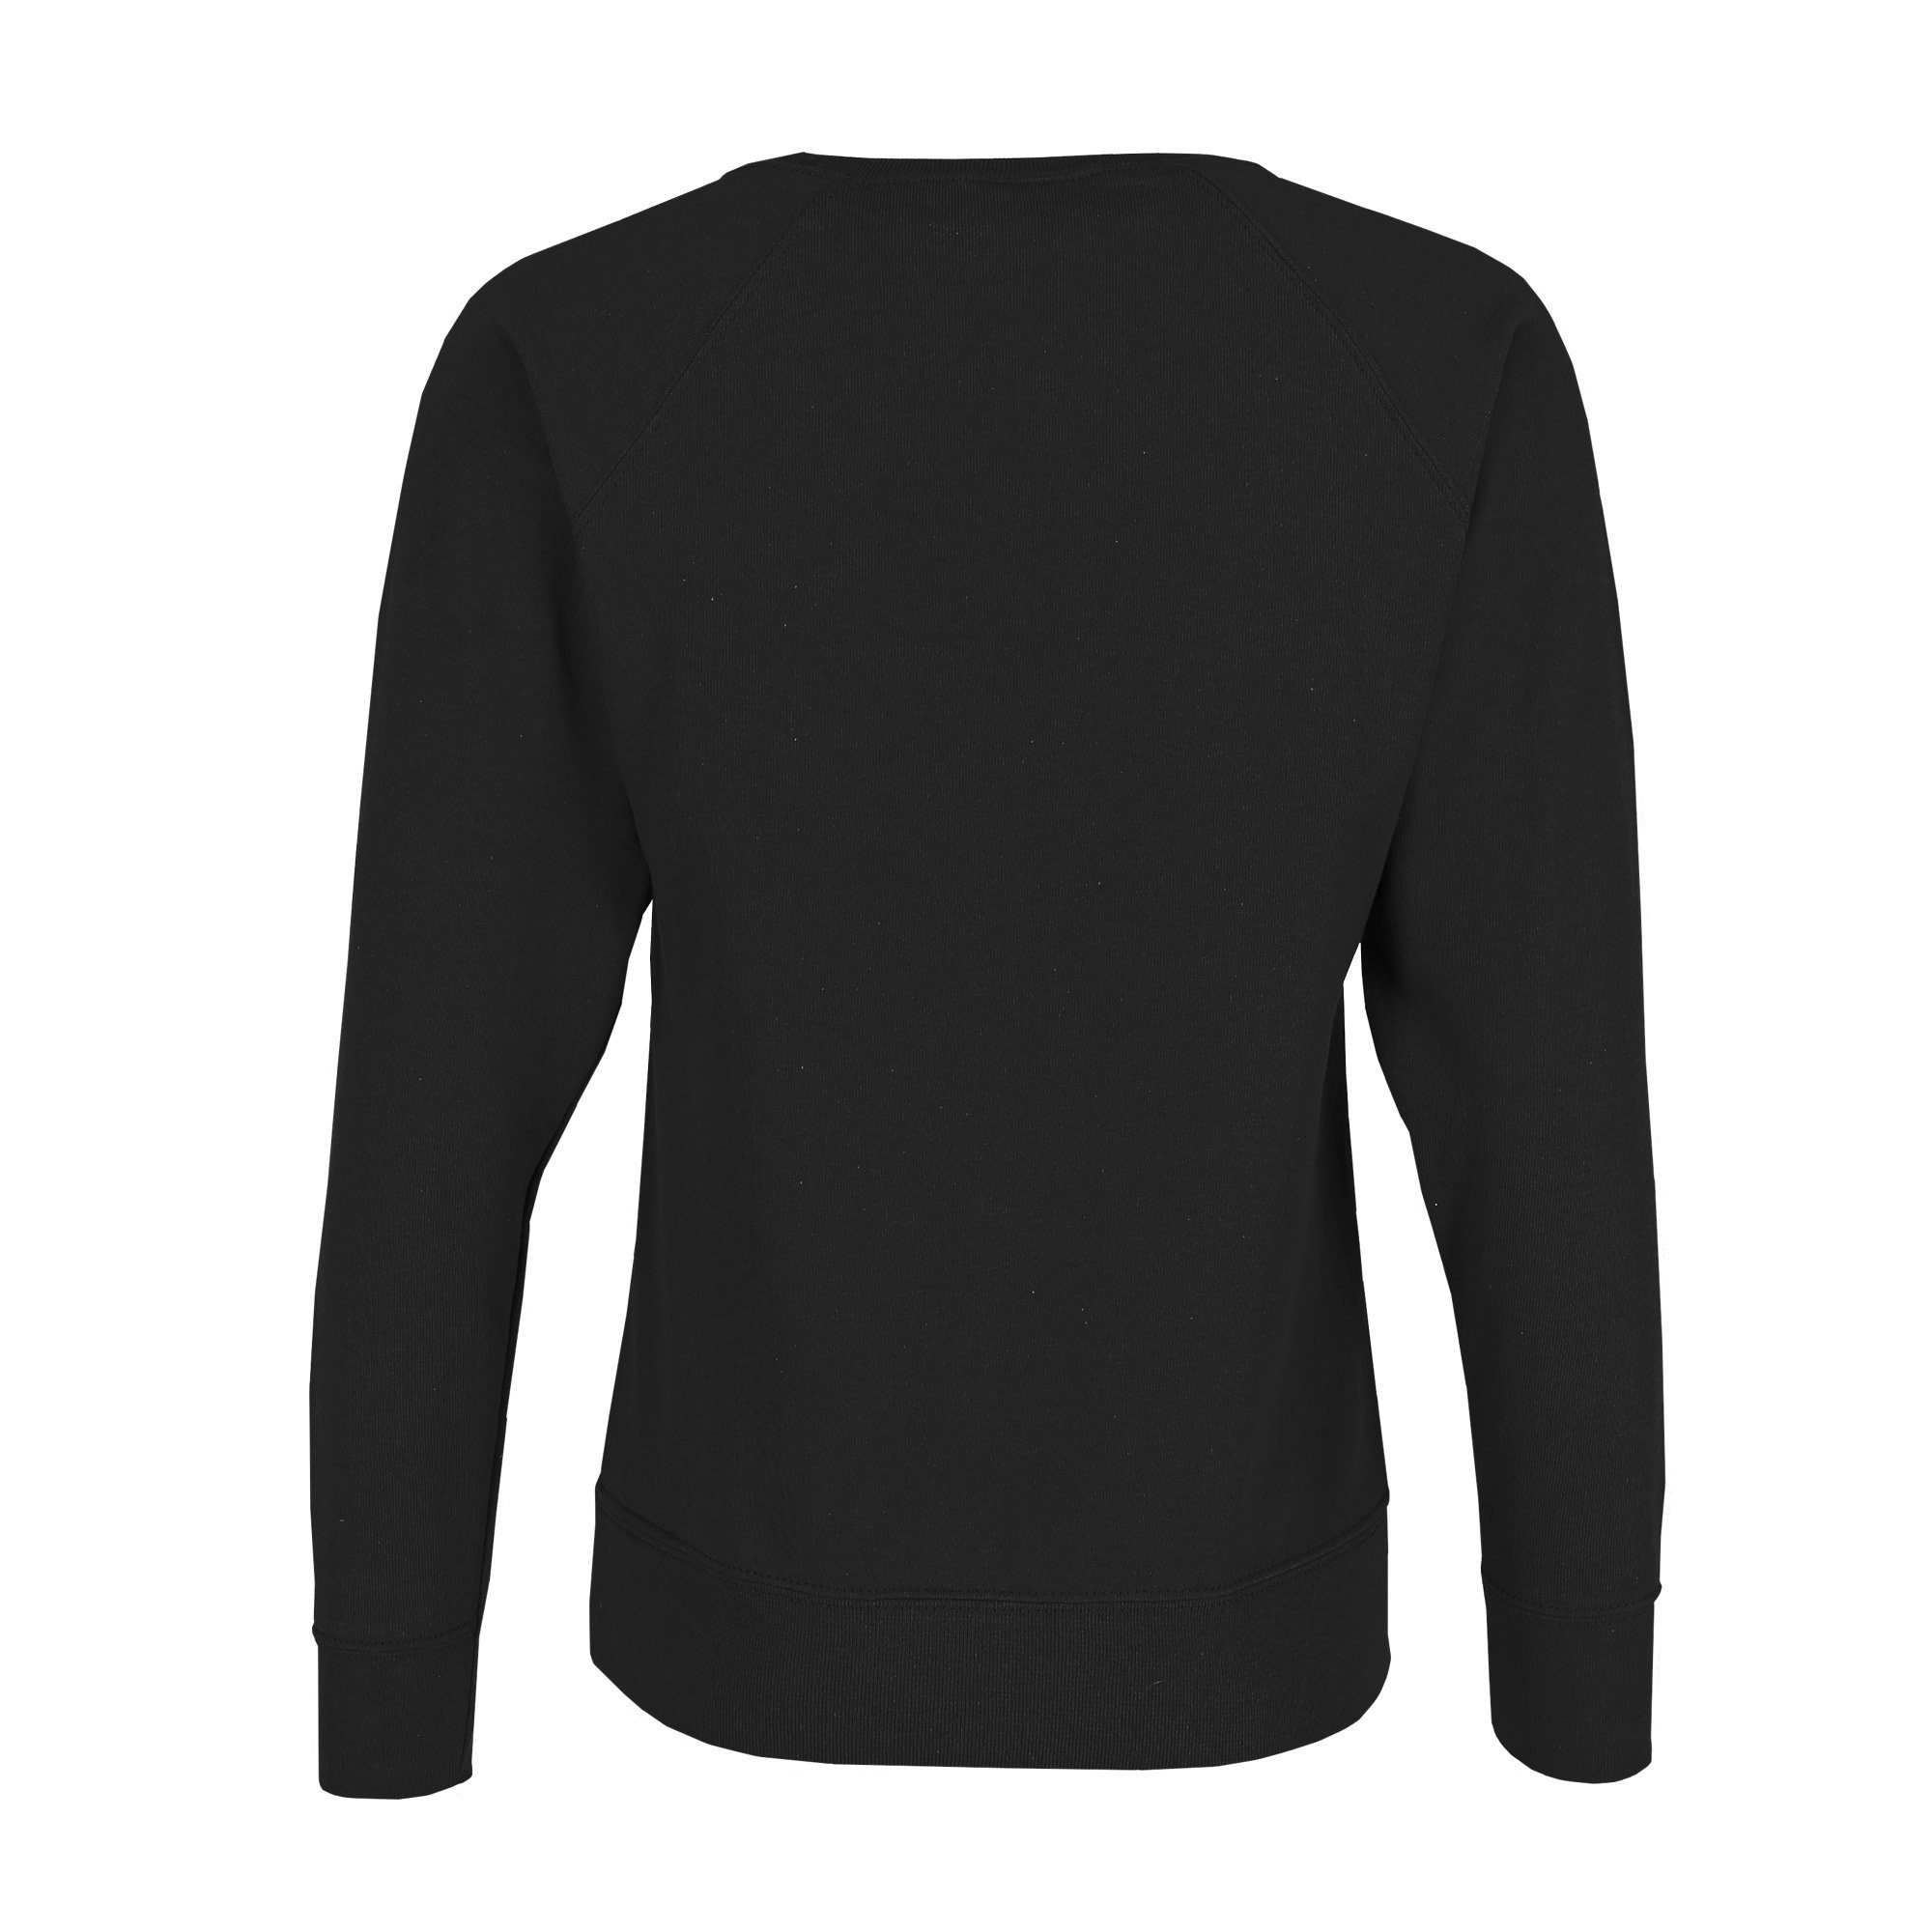 Fruit schwarz leichtes Sweatshirt mit of the Loom Sweatshirt Damen Vintage-Logo